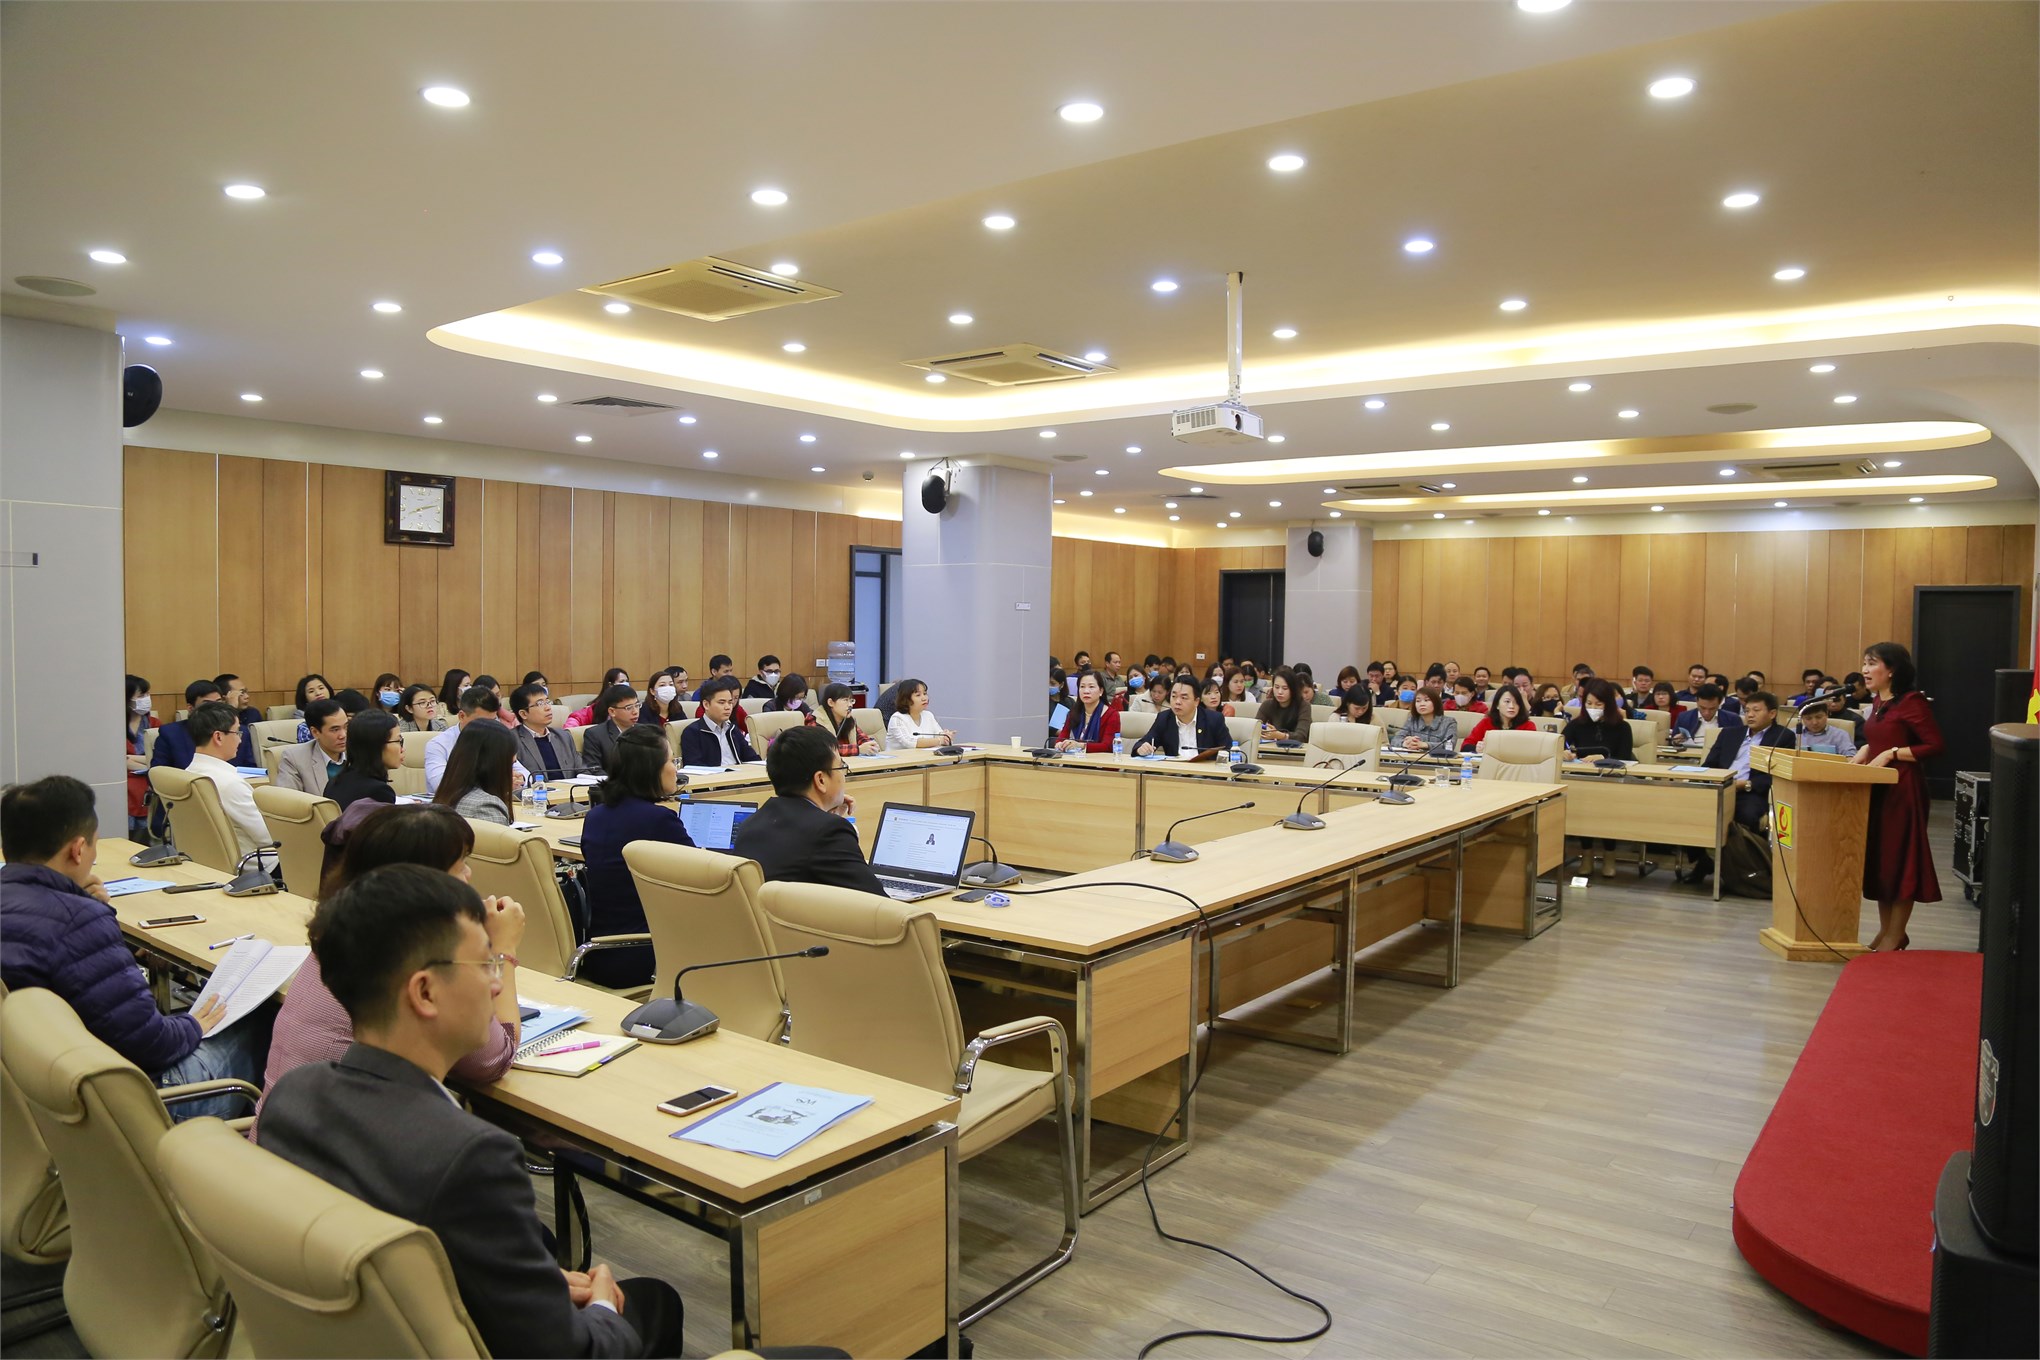 Đại học Công nghiệp Hà Nội tổ chức bồi dưỡng chuyên môn về công tác khảo thí cho cán bộ, giảng viên